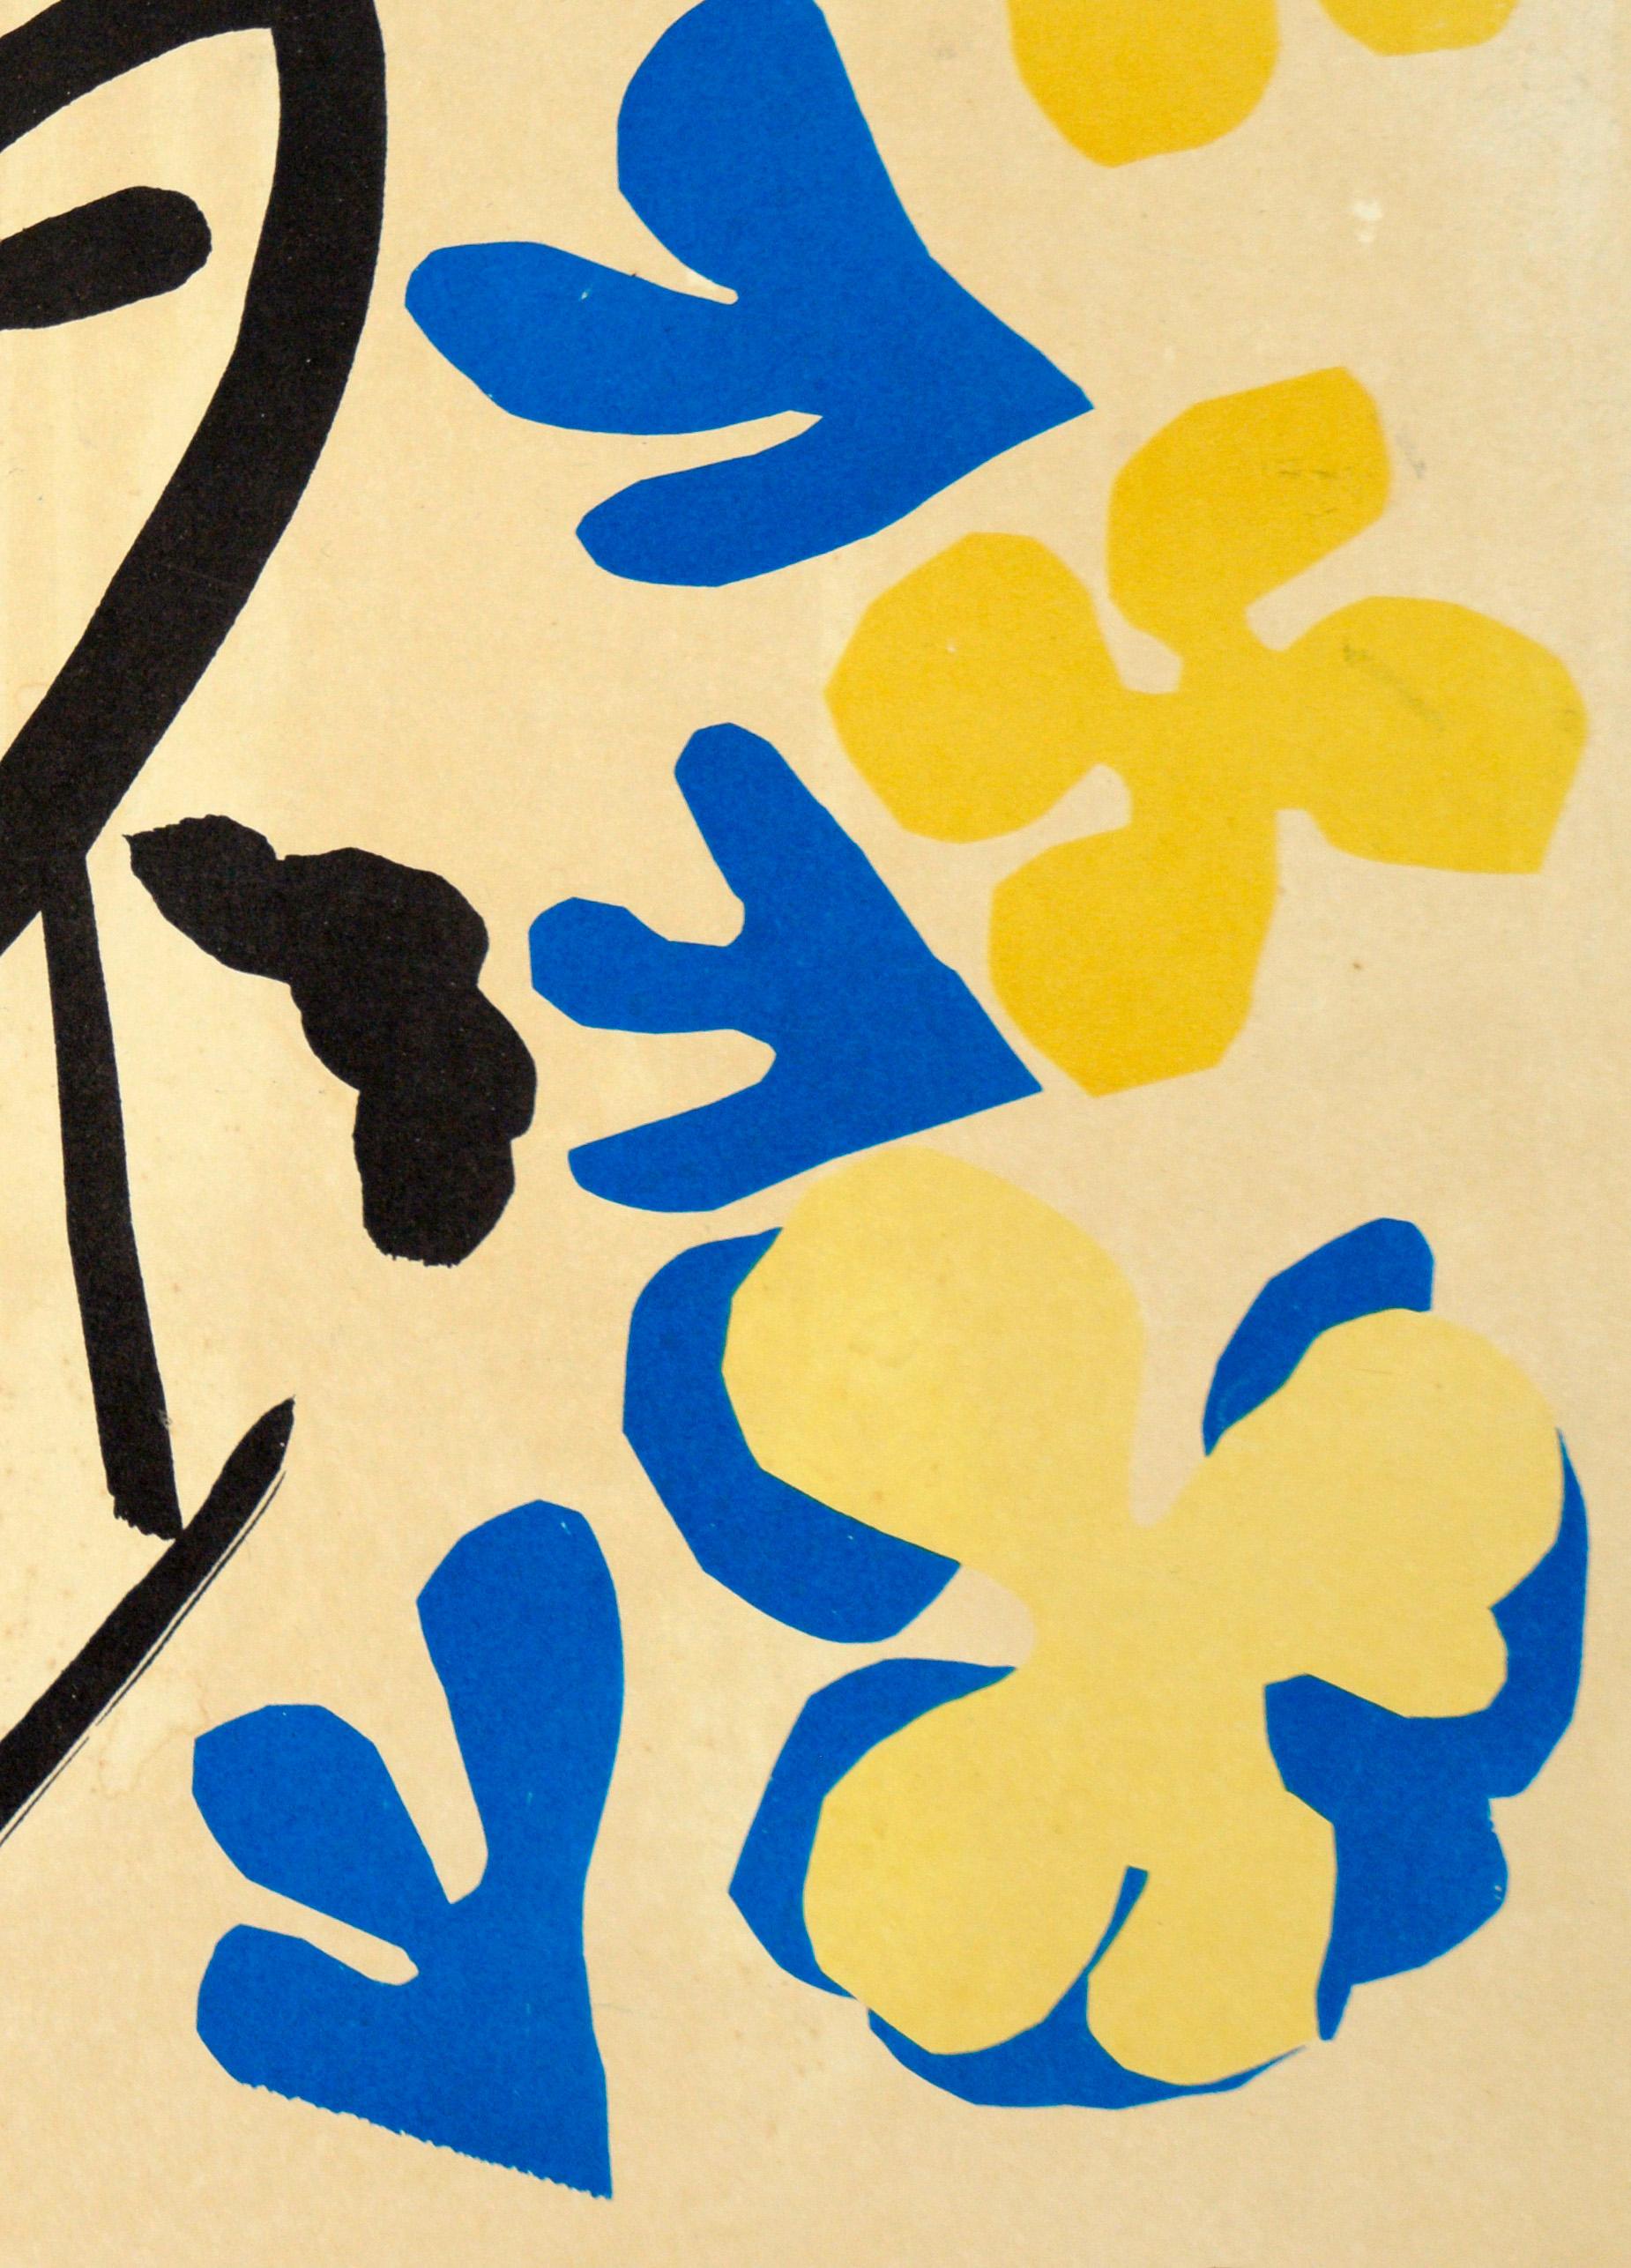 Original-Vintage-Ausstellungsplakat von Henri Matisse, The Tate Gallery, 1953 (Fauvismus), Print, von (after) Henri Matisse